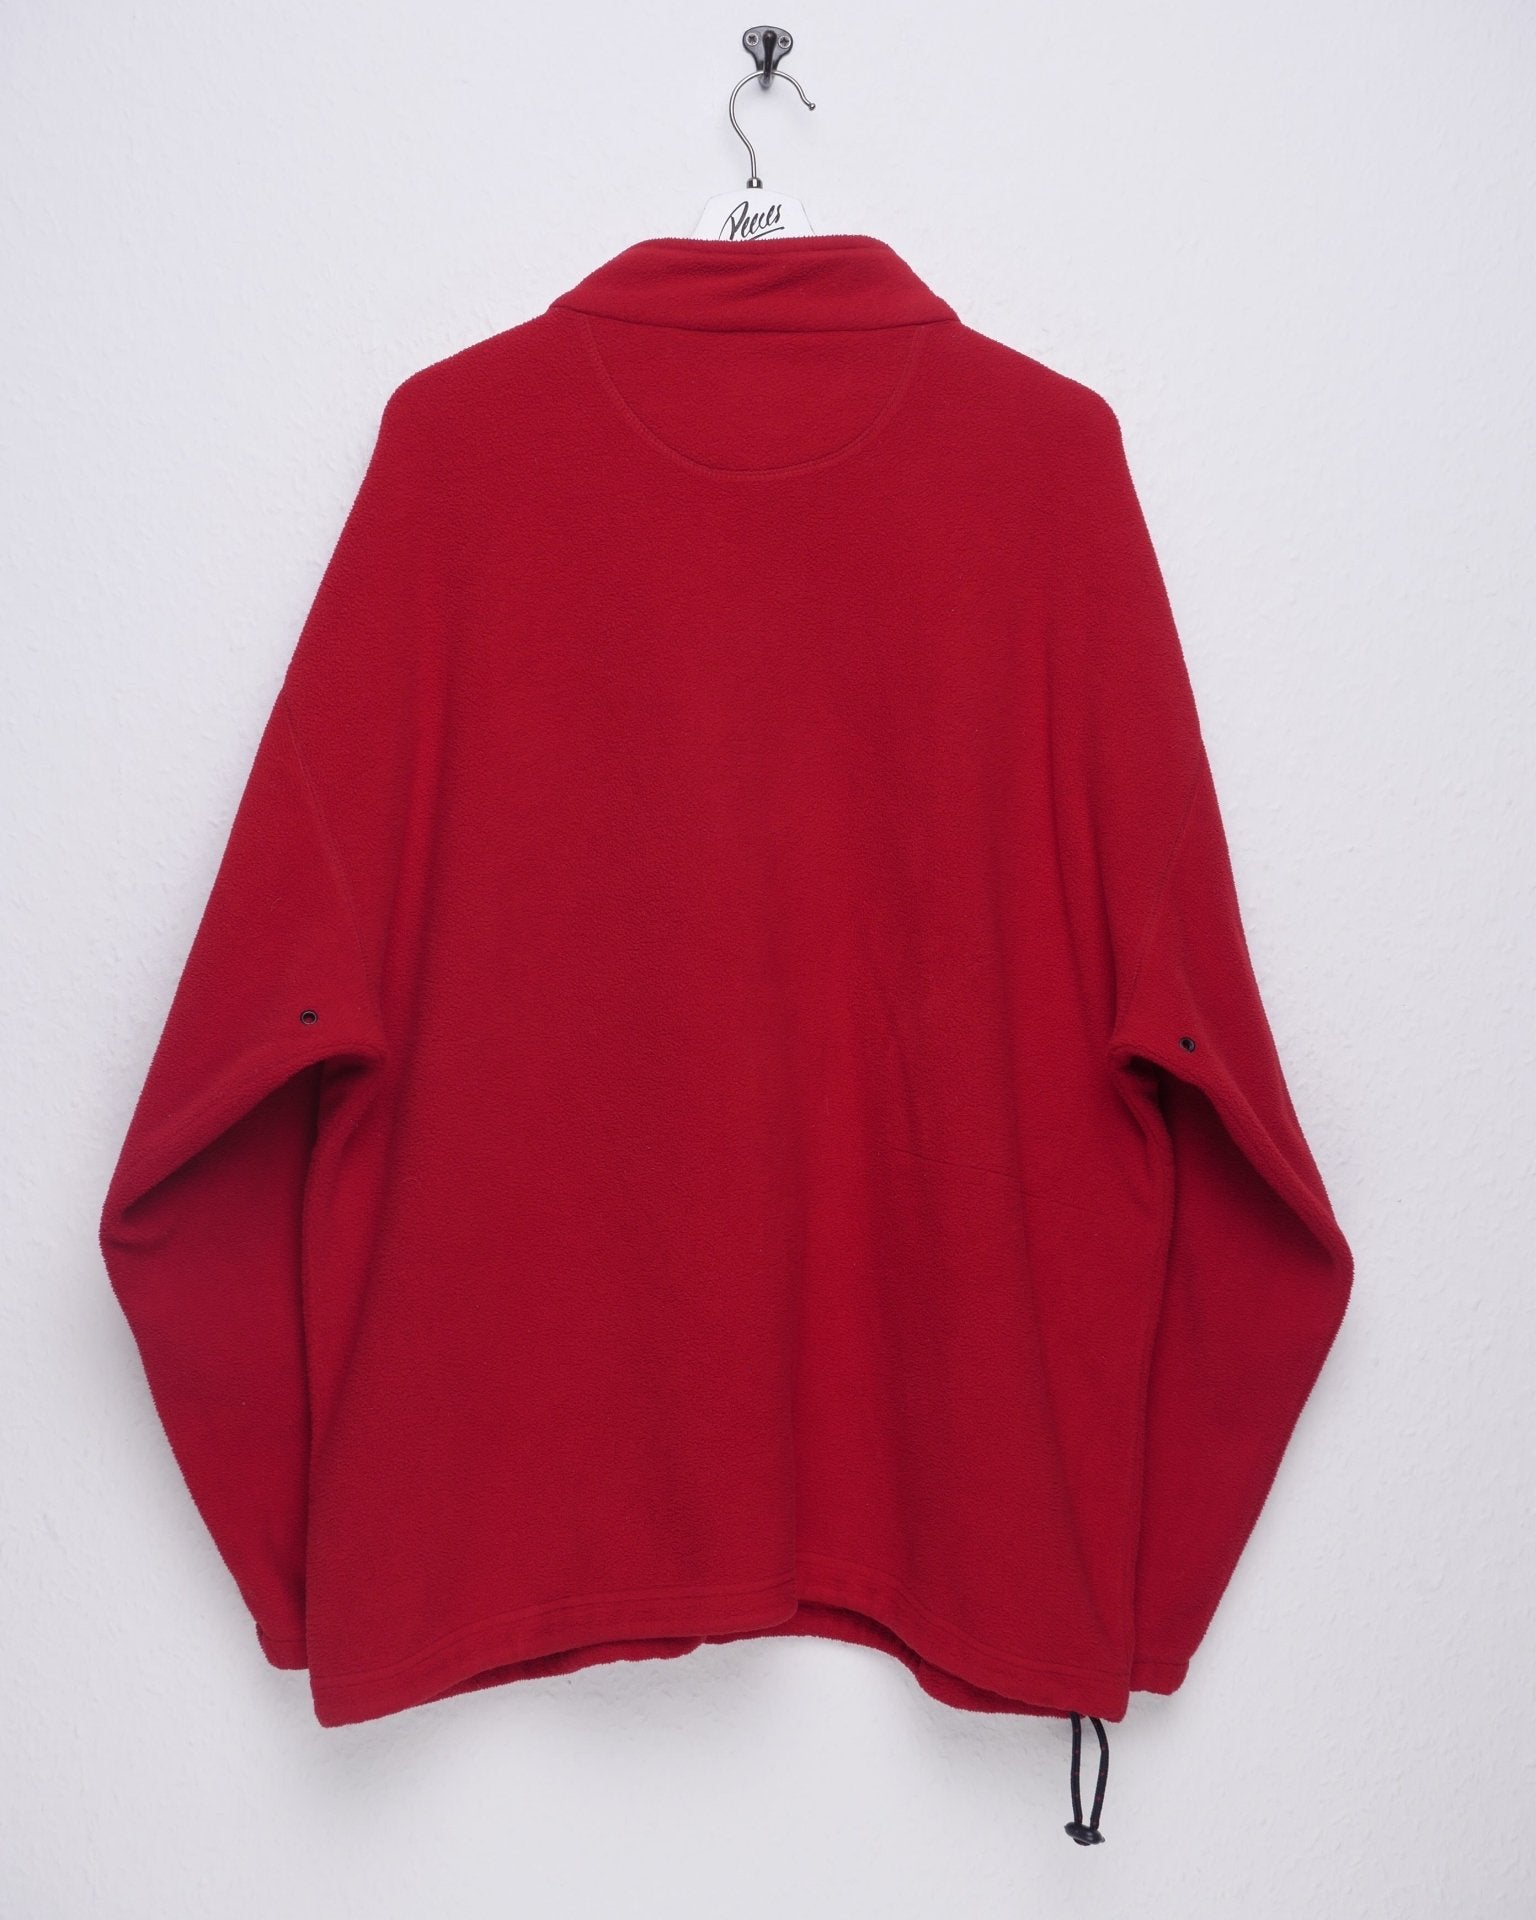 Chaps by Ralph Lauren embroidered Logo red Fleece Zip Sweater - Peeces